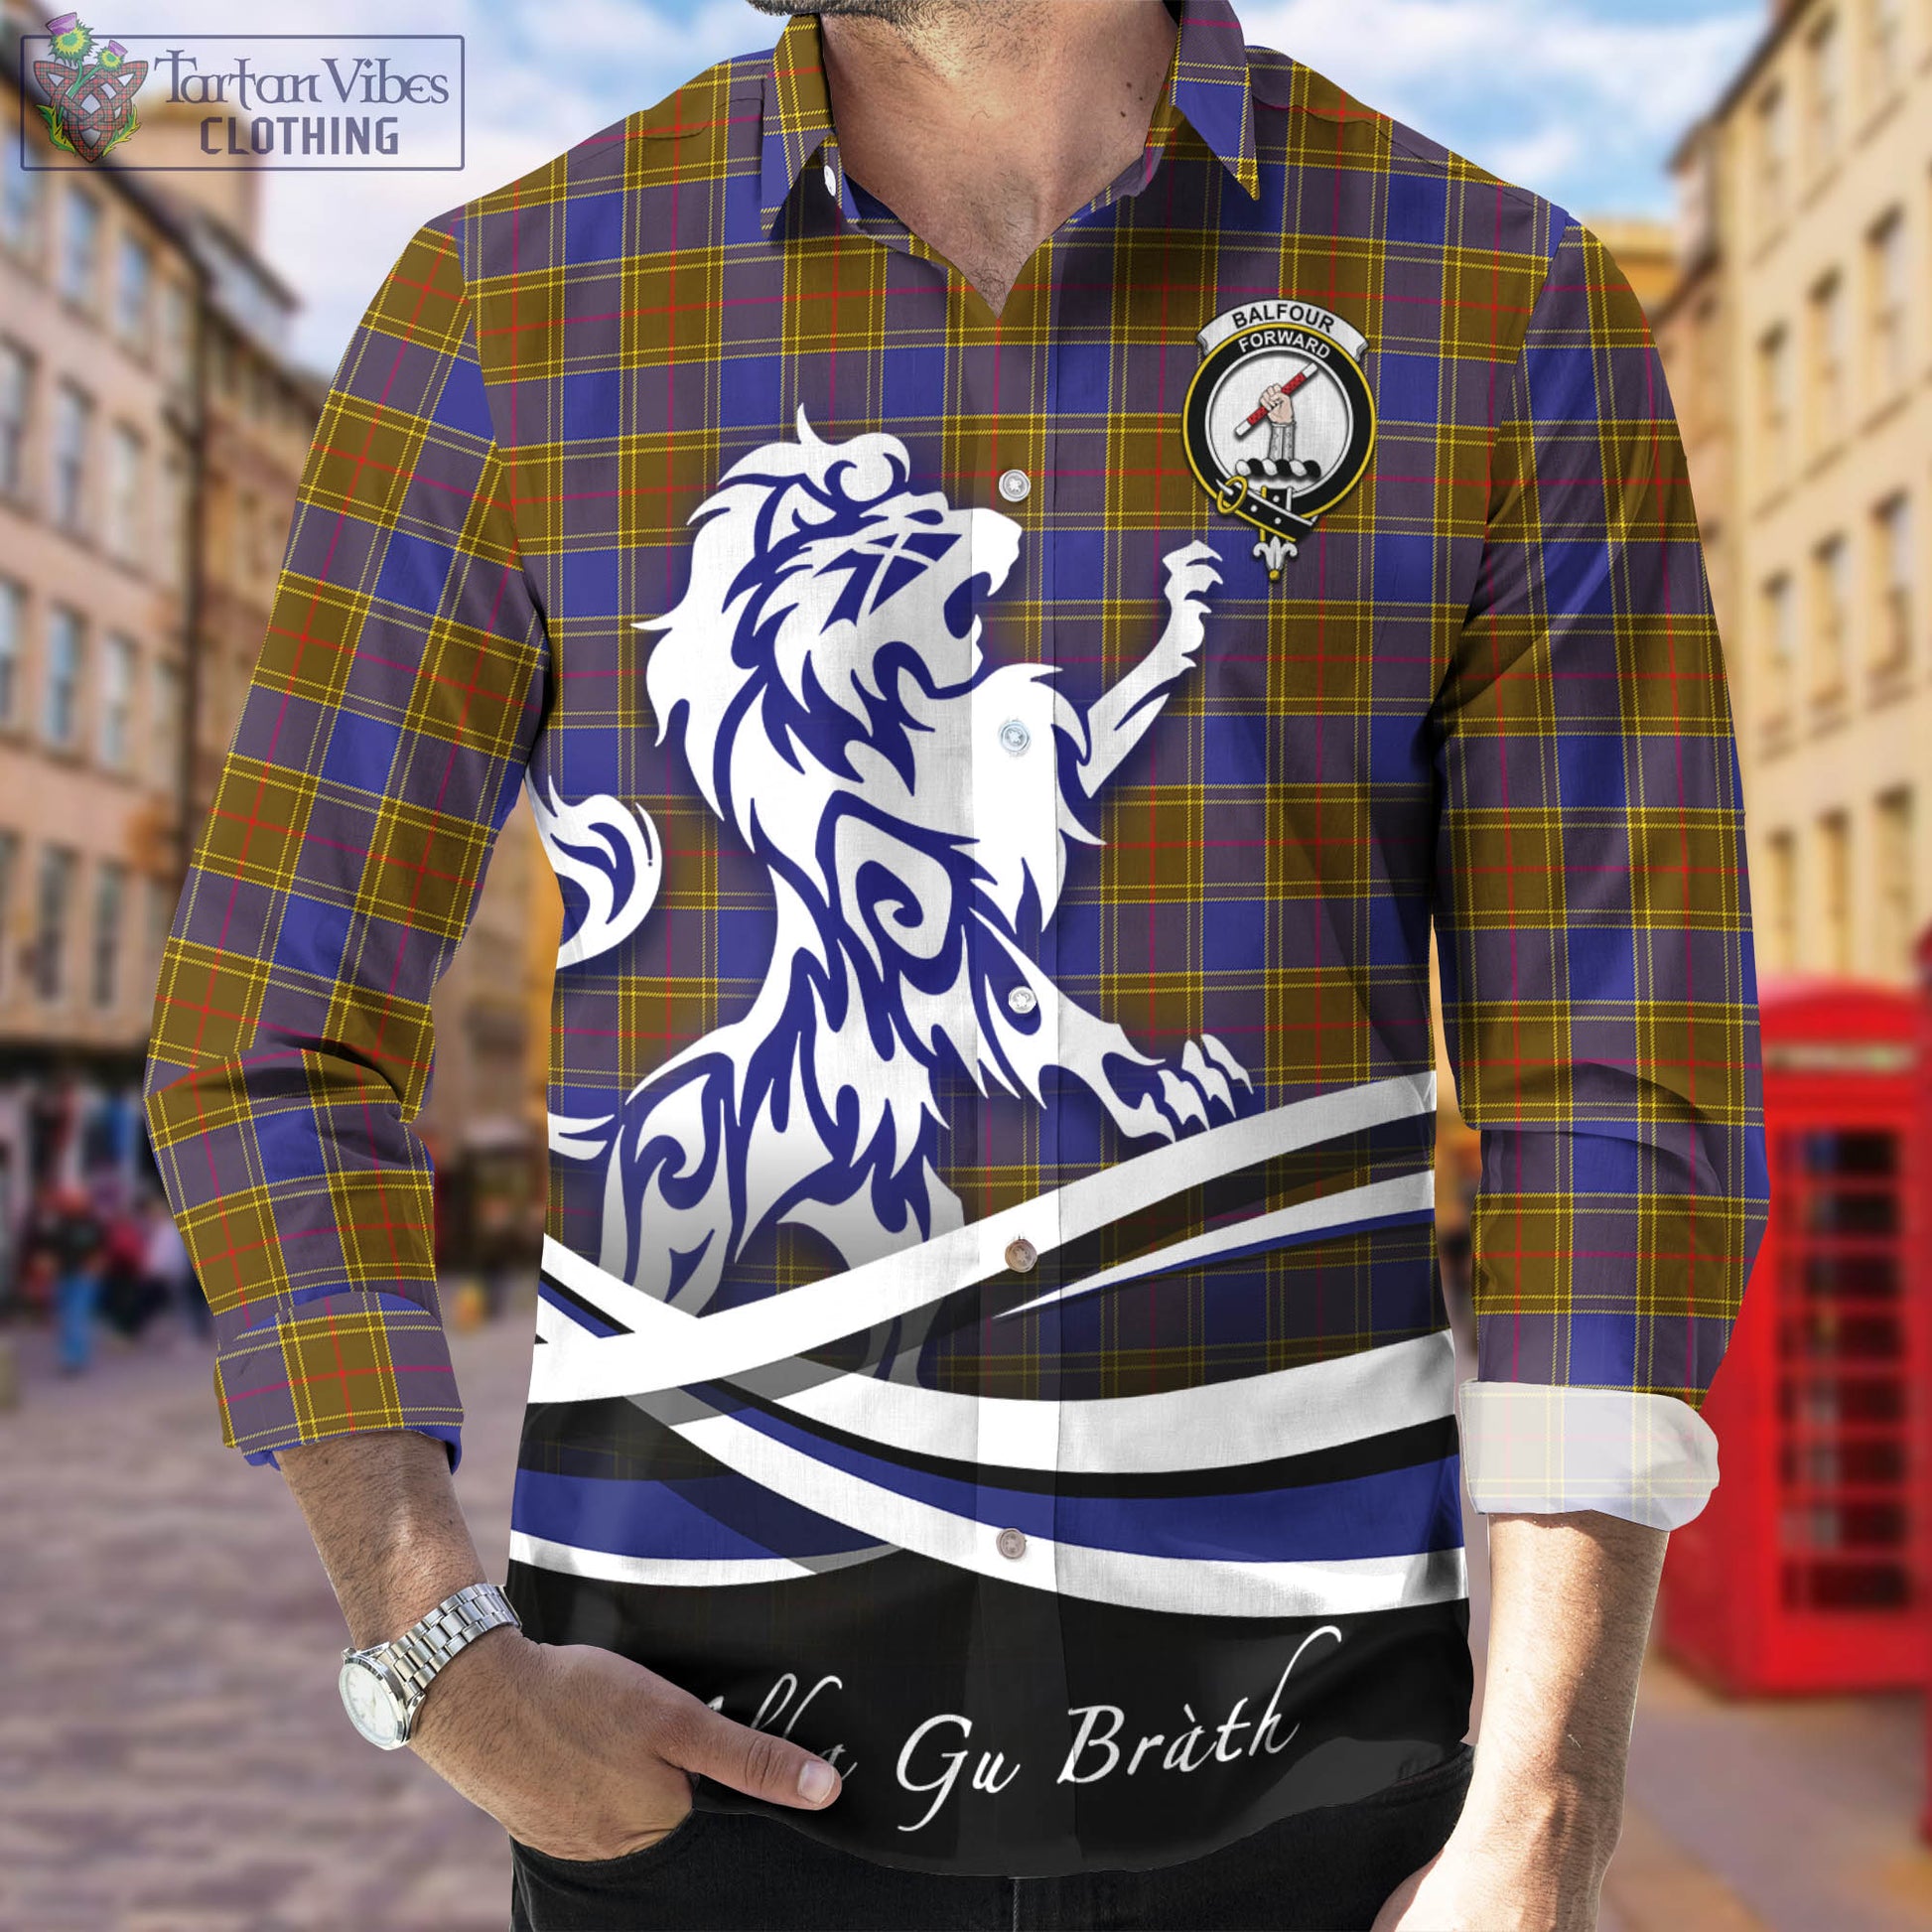 balfour-modern-tartan-long-sleeve-button-up-shirt-with-alba-gu-brath-regal-lion-emblem